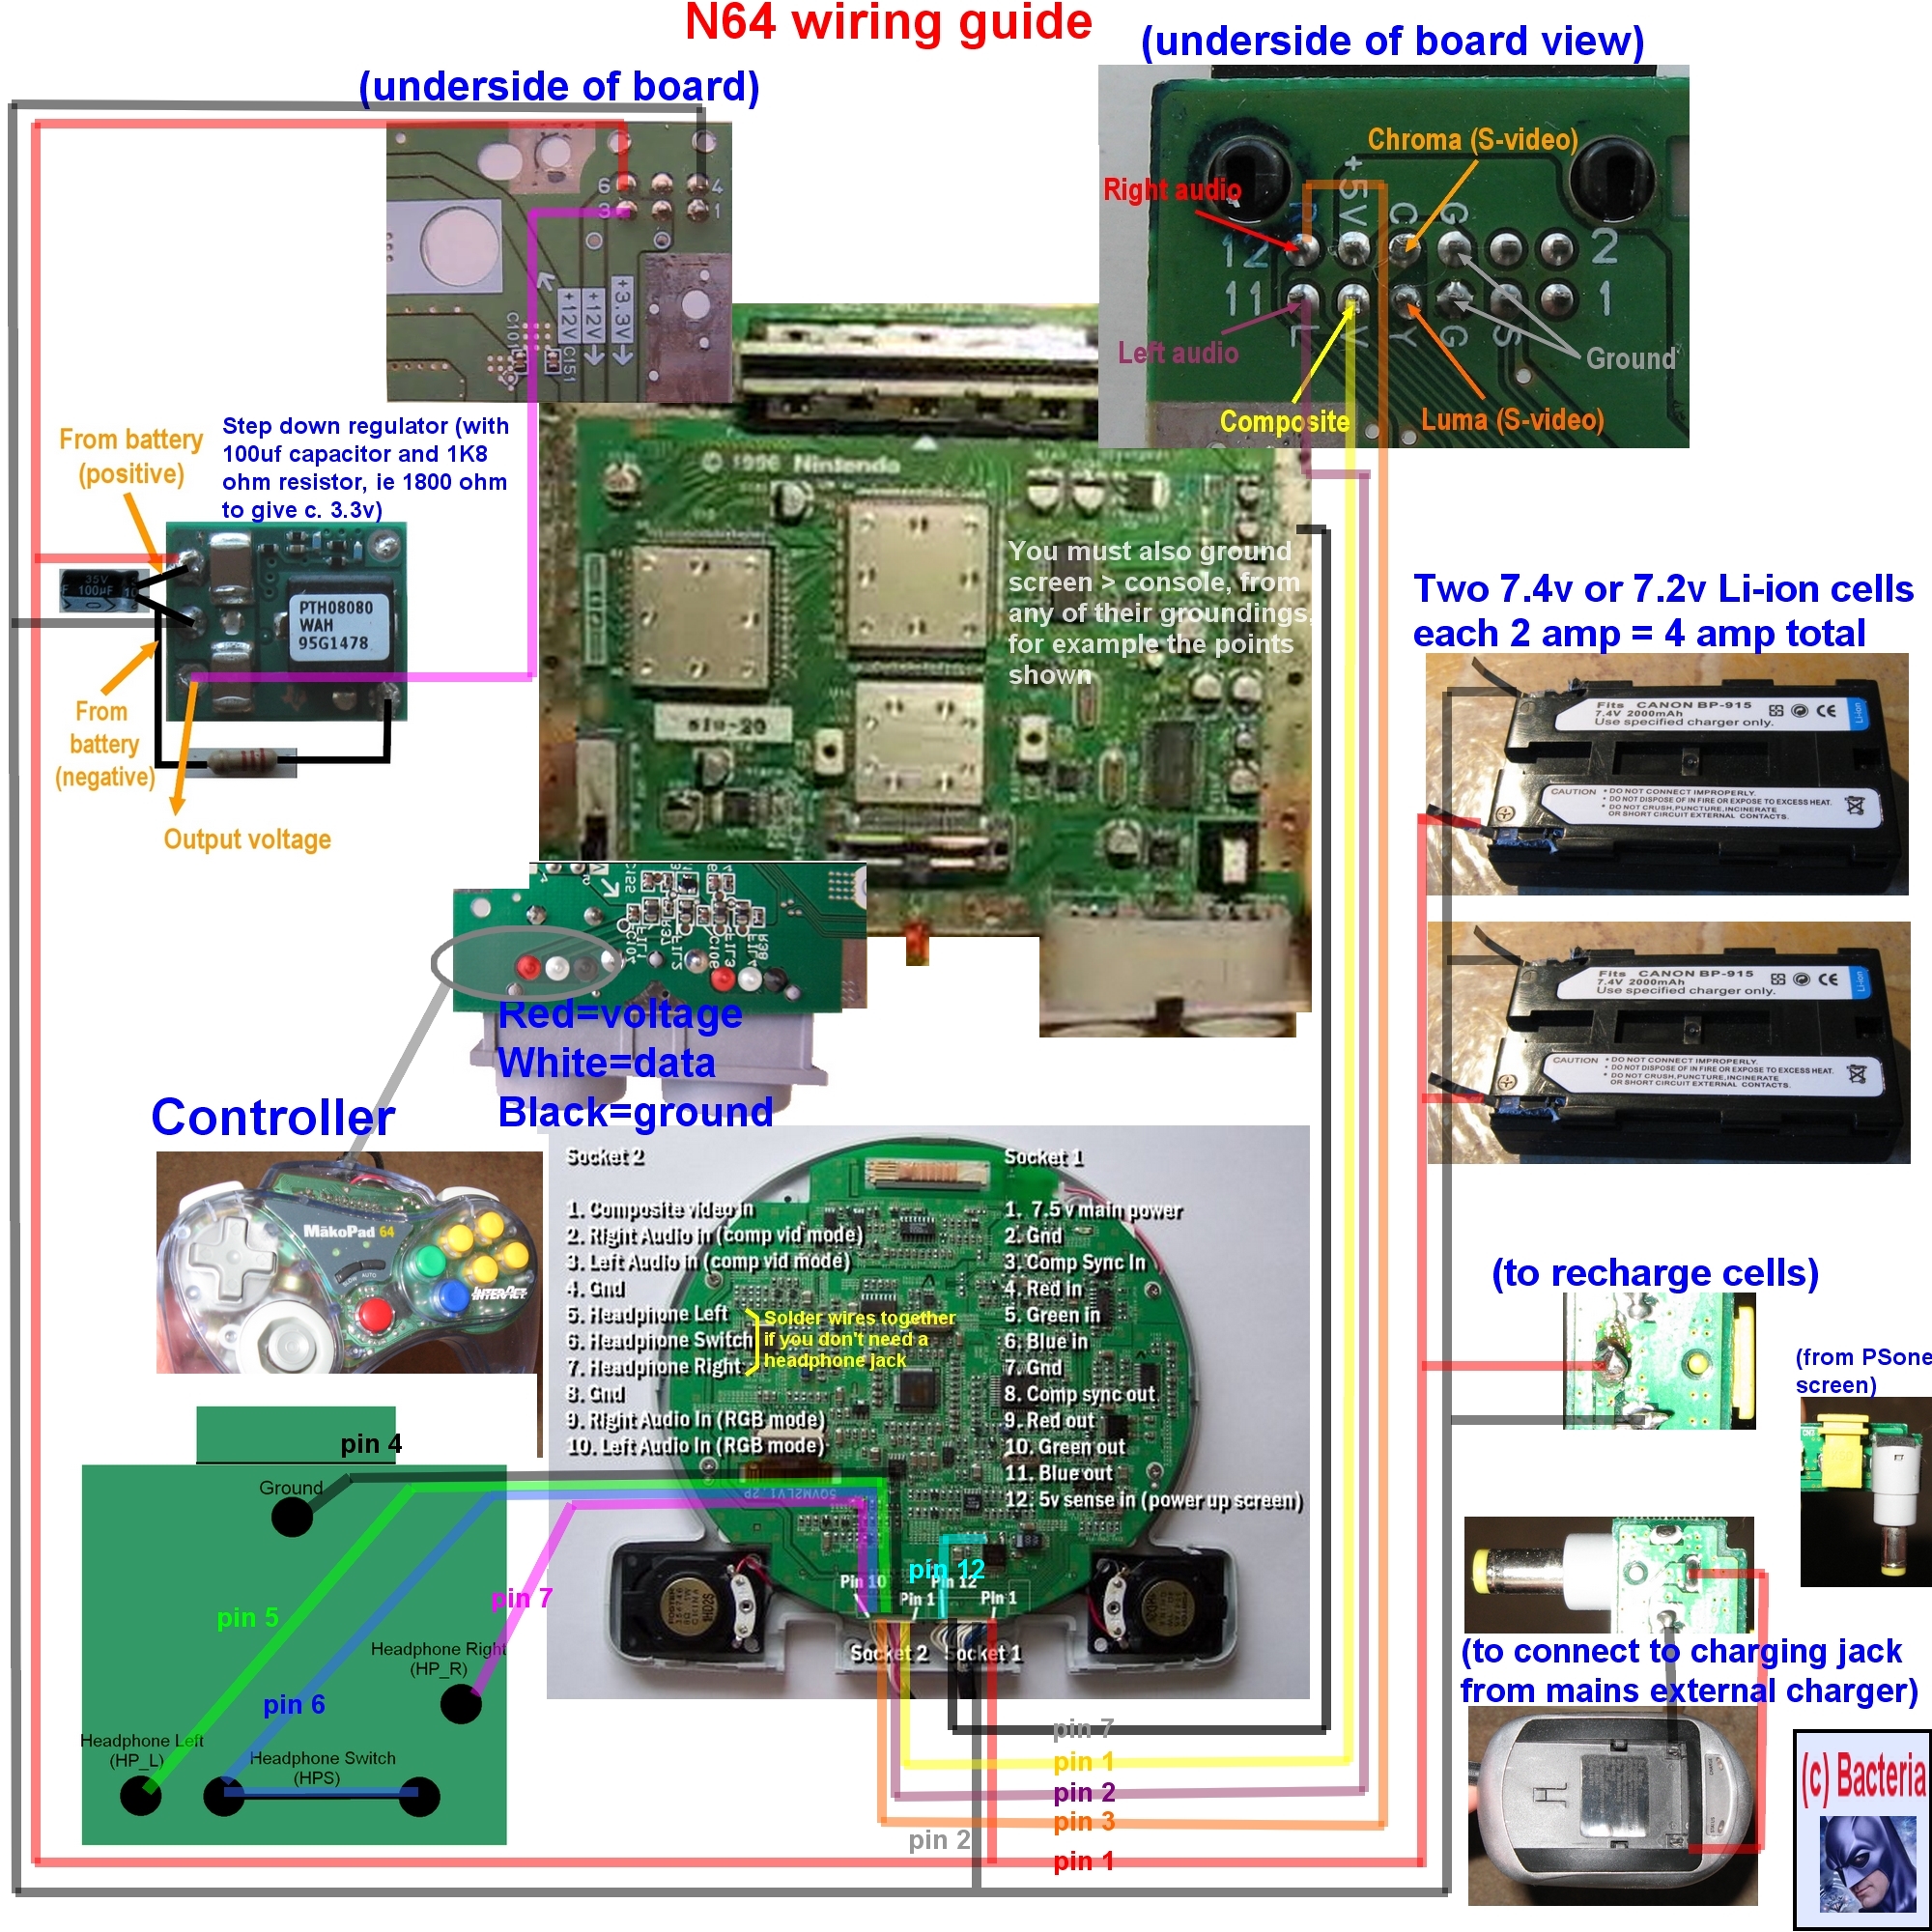 n64-wiring-guide1.jpg